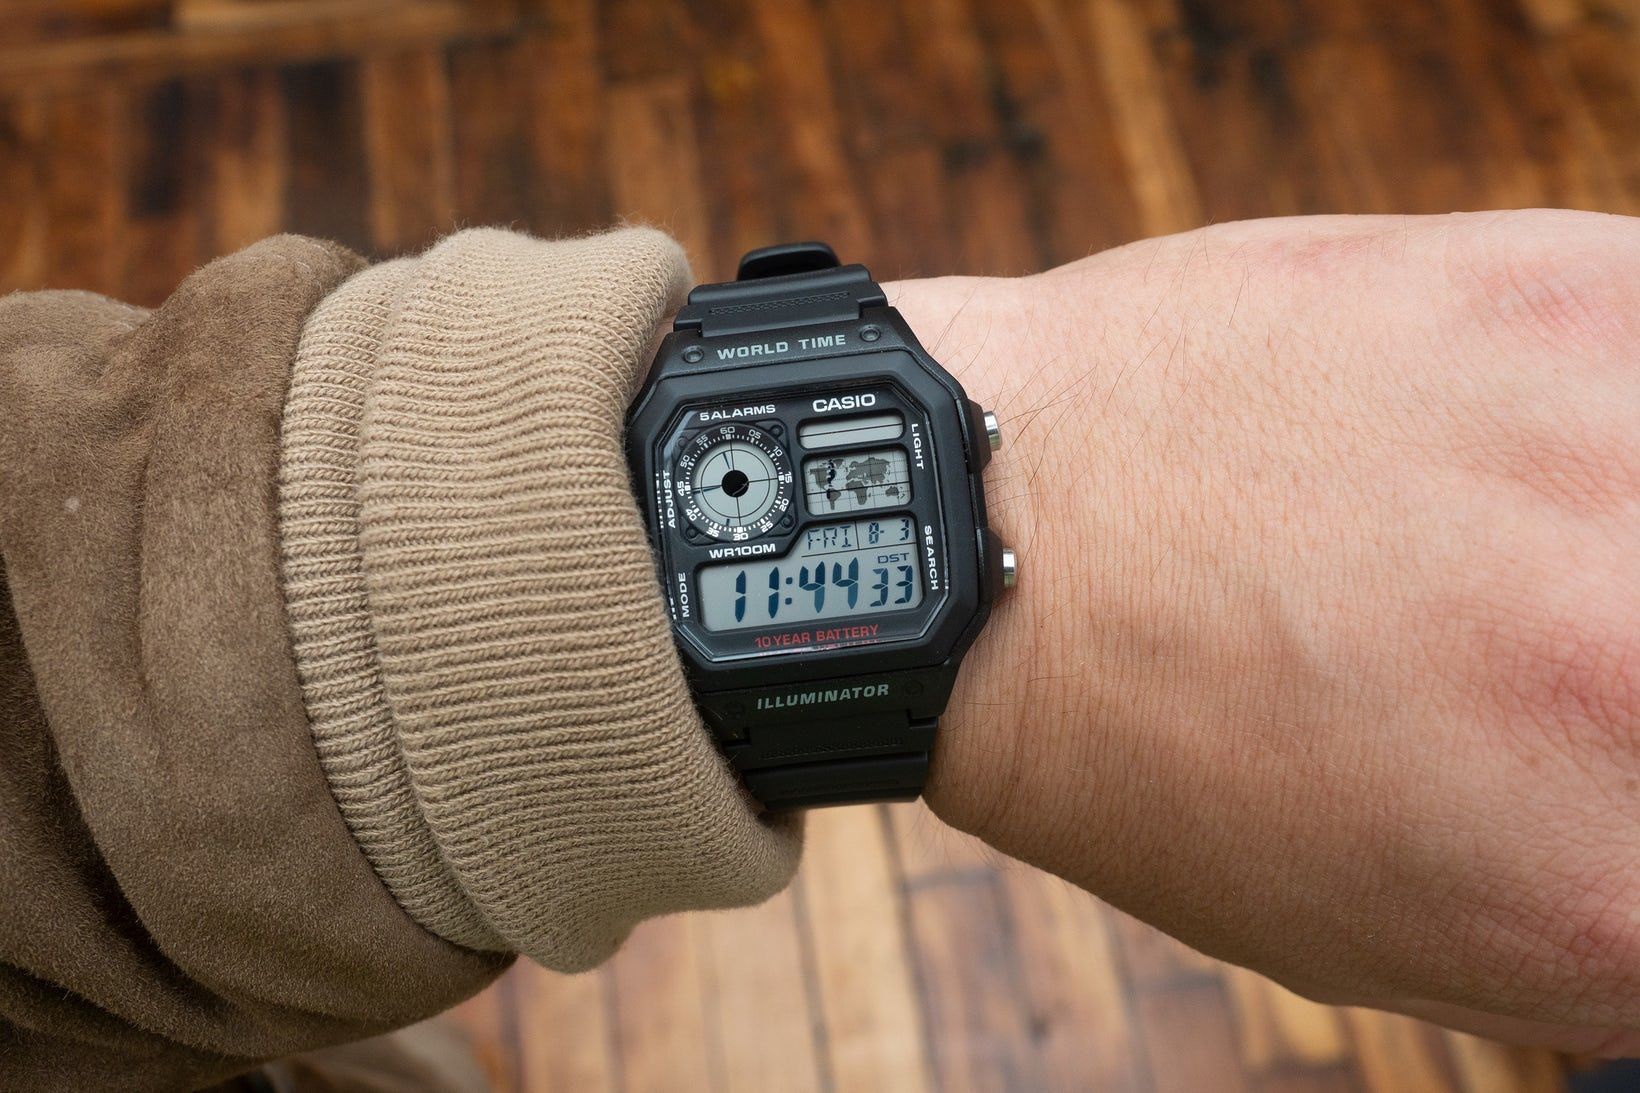 Tích hợp tính năng chống nước 100m, màn hình LCD nhưng Casio World Timer Watch chỉ có giá 25 USD (khoảng 600 nghìn đồng).